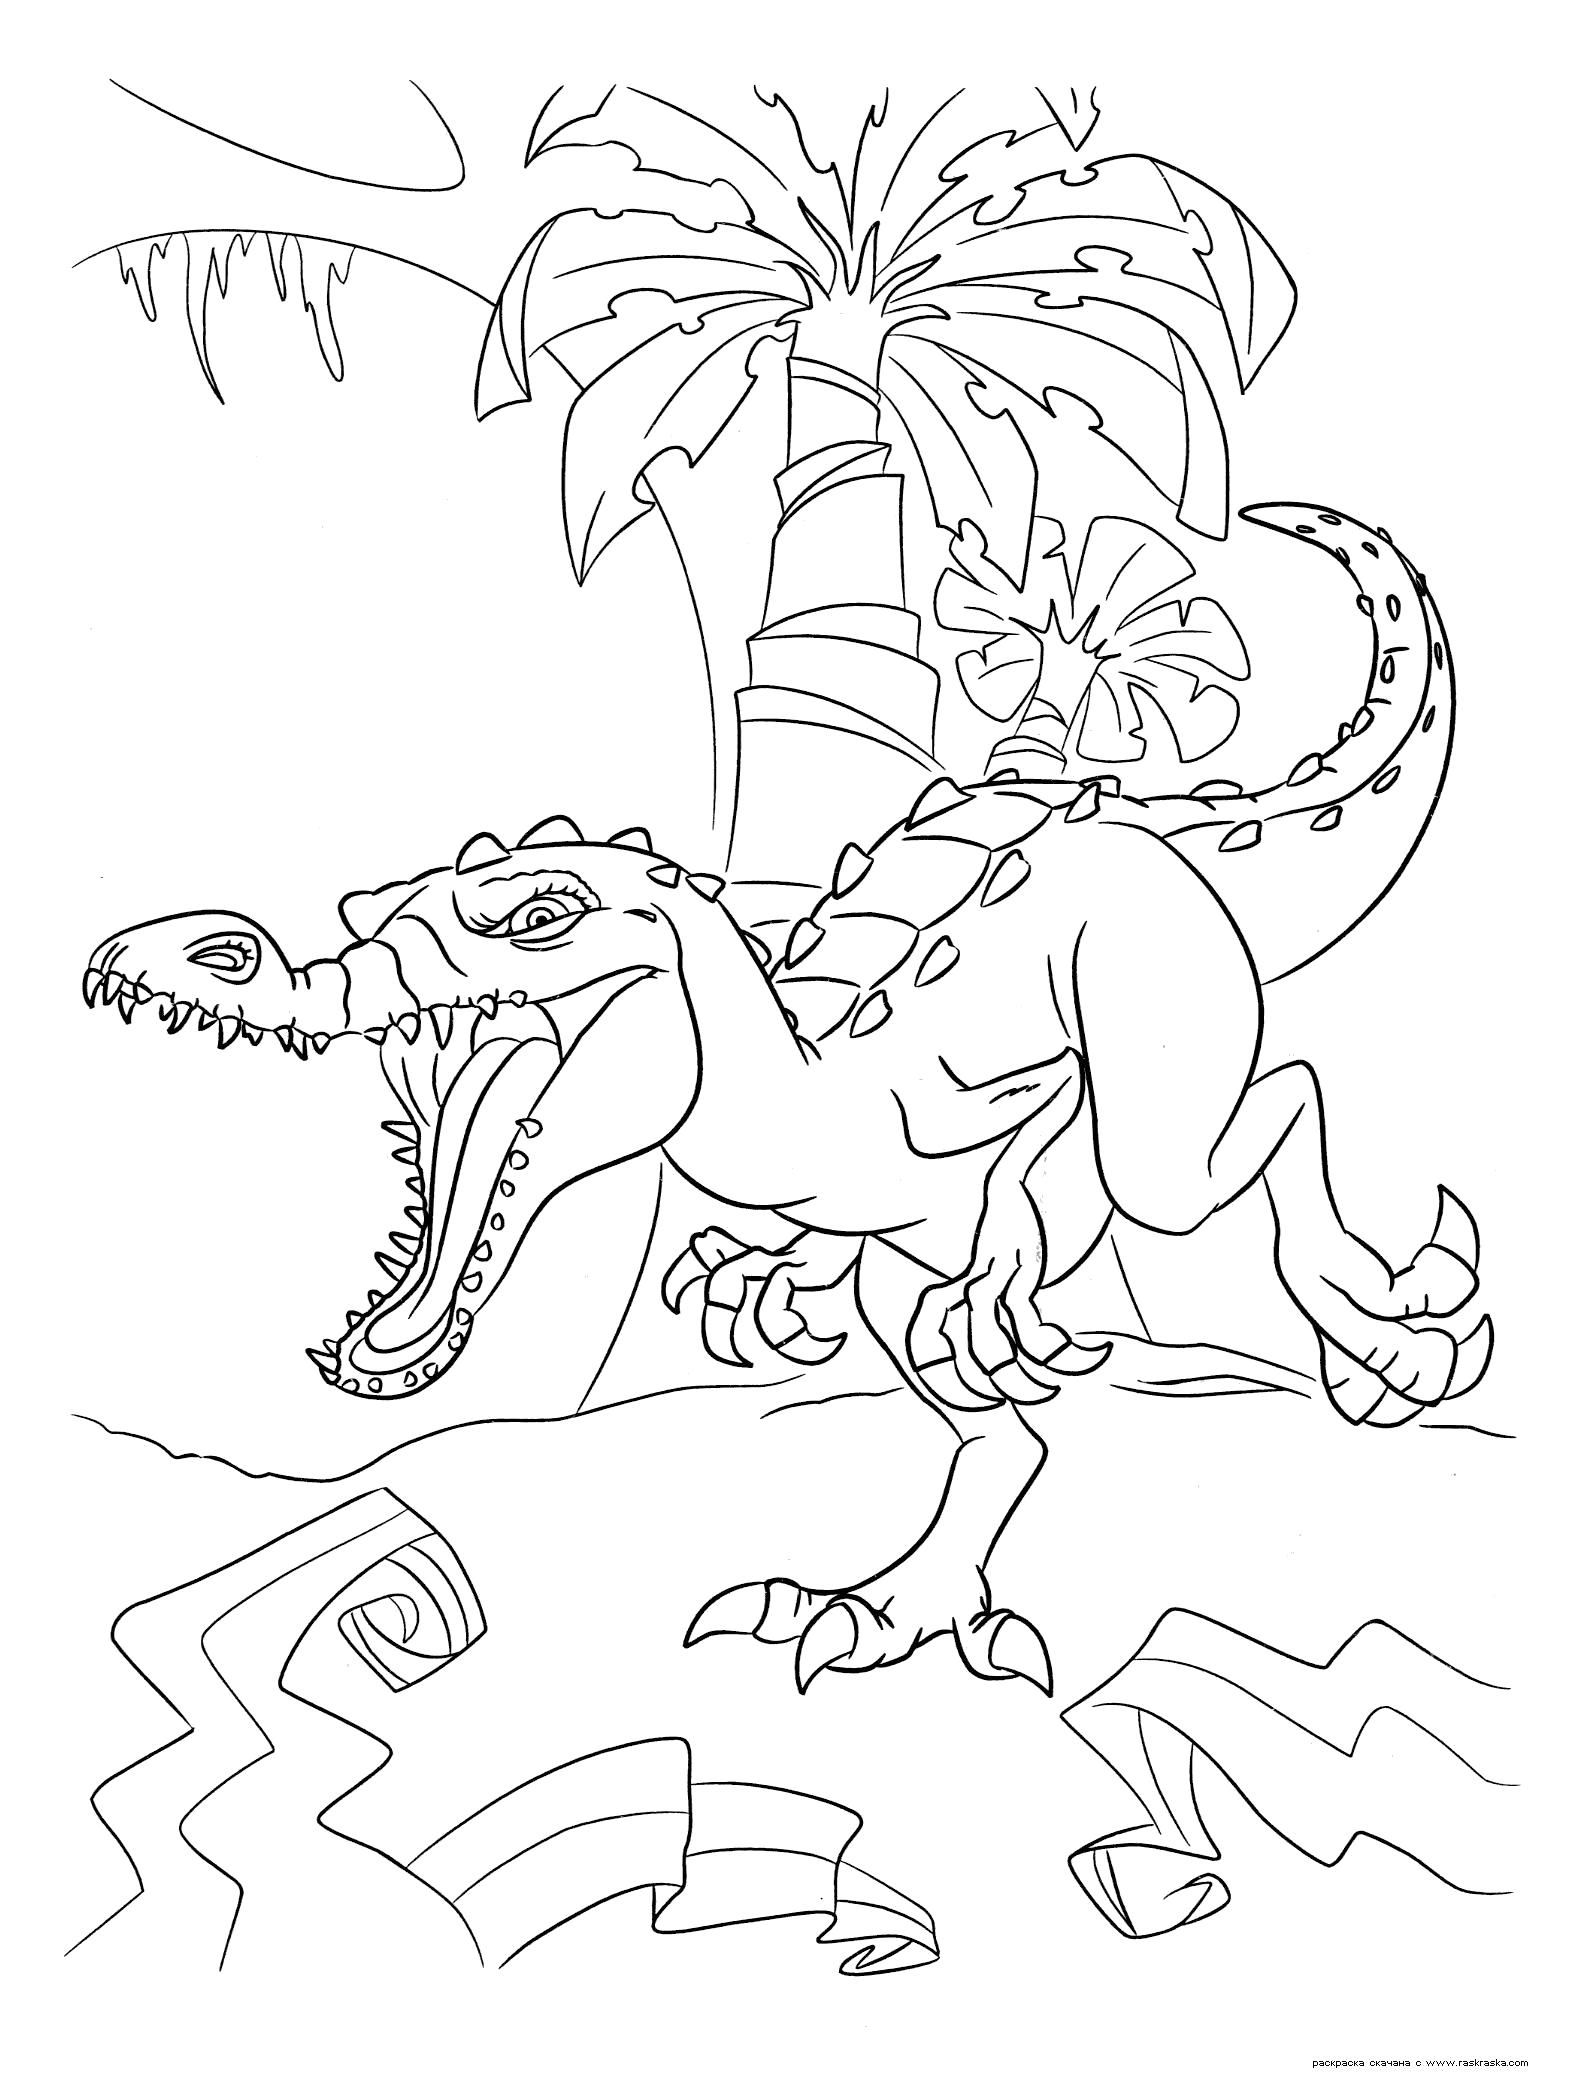 Раскраска Раскраска Руди. Раскраска Гигантский динозавр Руди, белый барионикс, гроза и ужас джунглей . динозавр